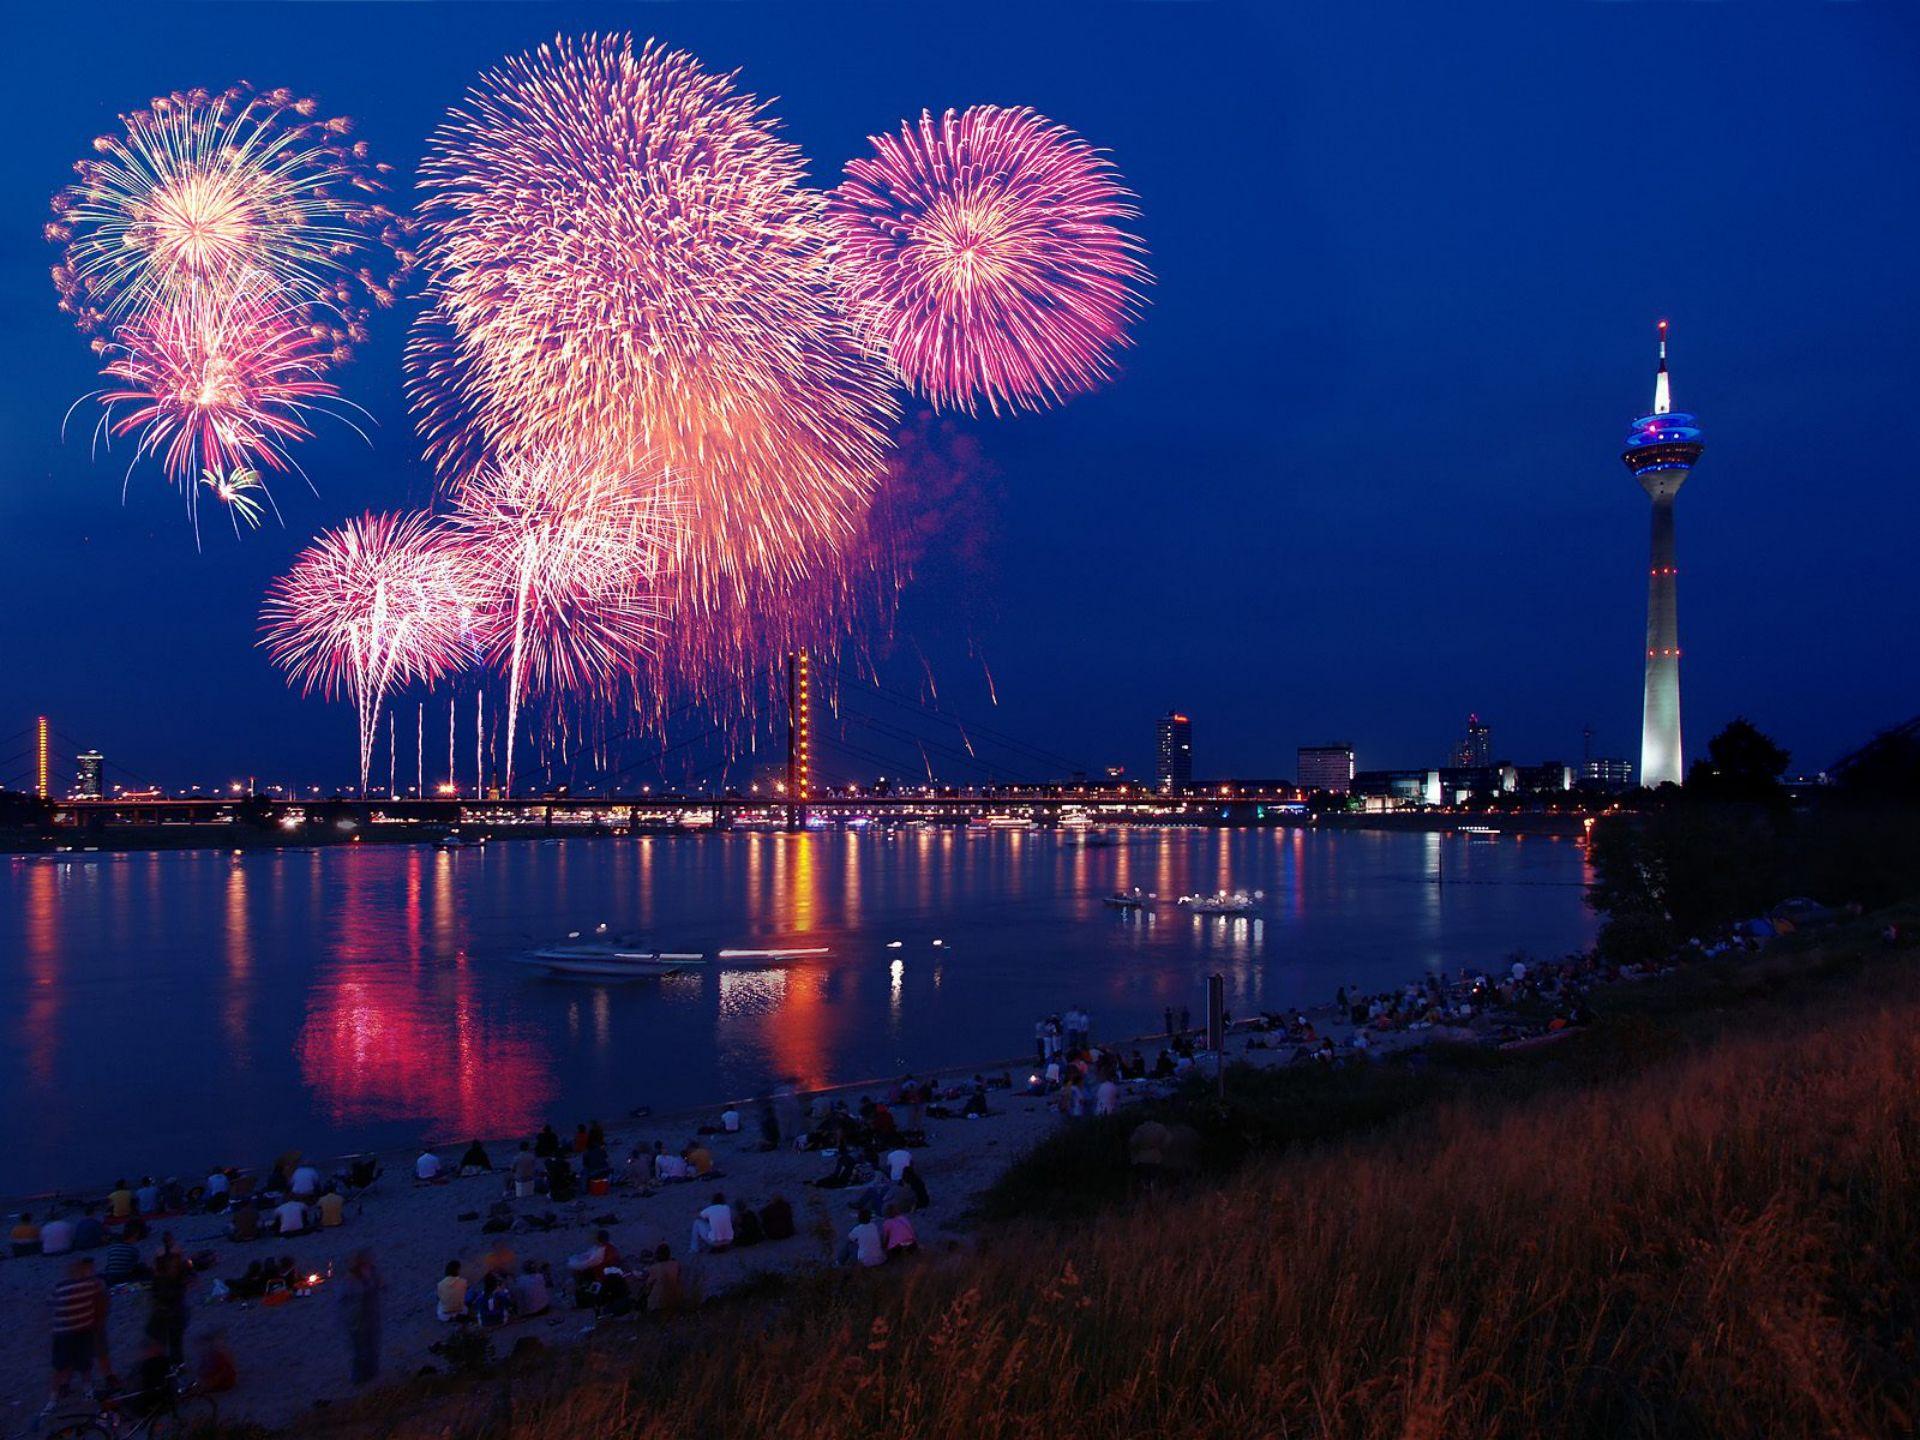 Fireworks in Dusseldorf, Germany widescreen wallpaper. Wide